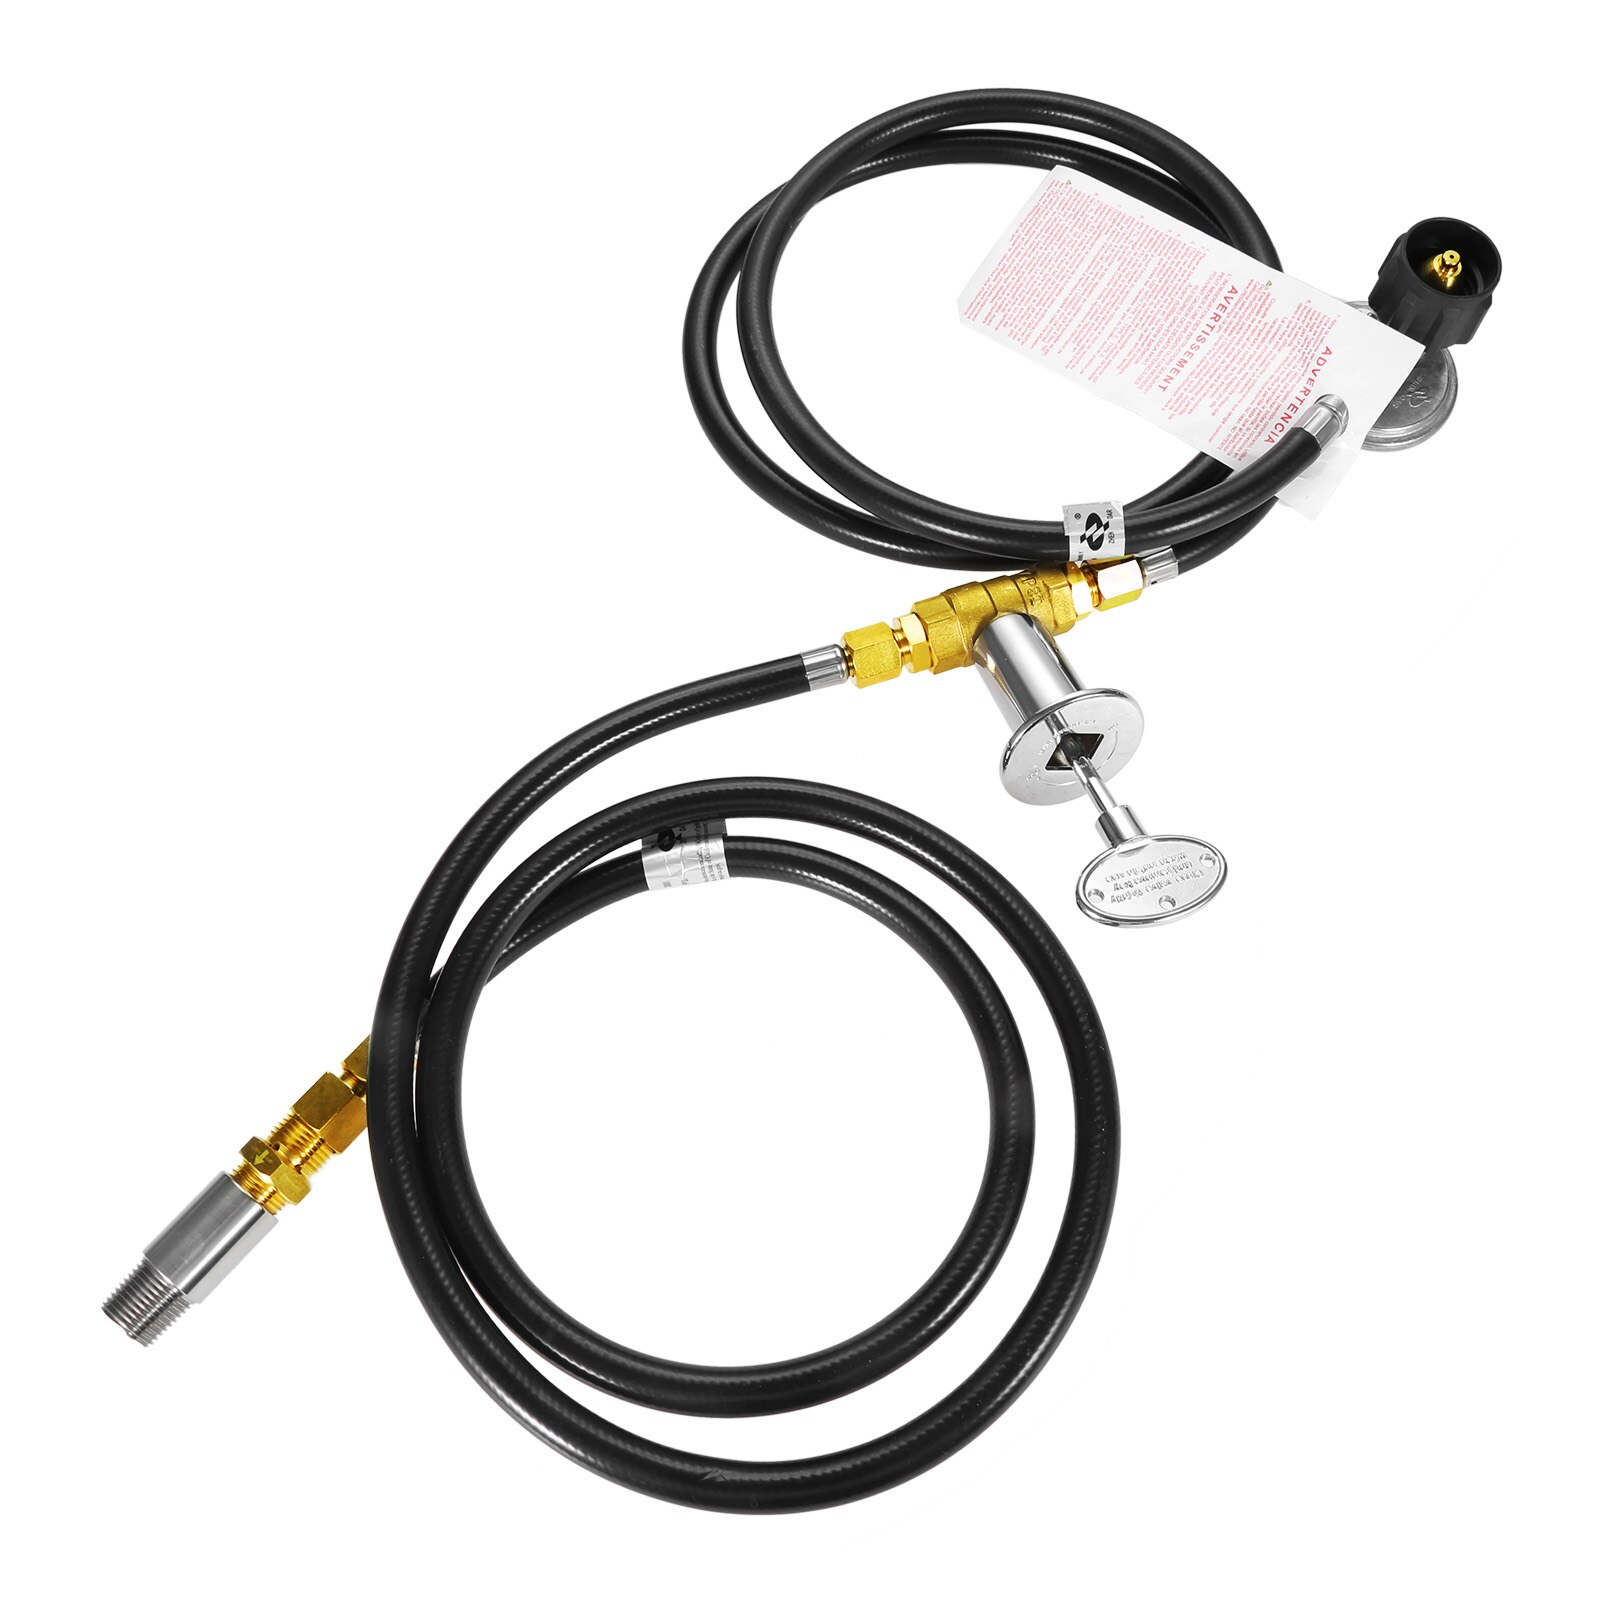 1/2 "propan gas brandhane ventil kontrolsystem kit slangesamling udskiftning max 90,000 btu (nøgle kontrolventil monteringssæt)